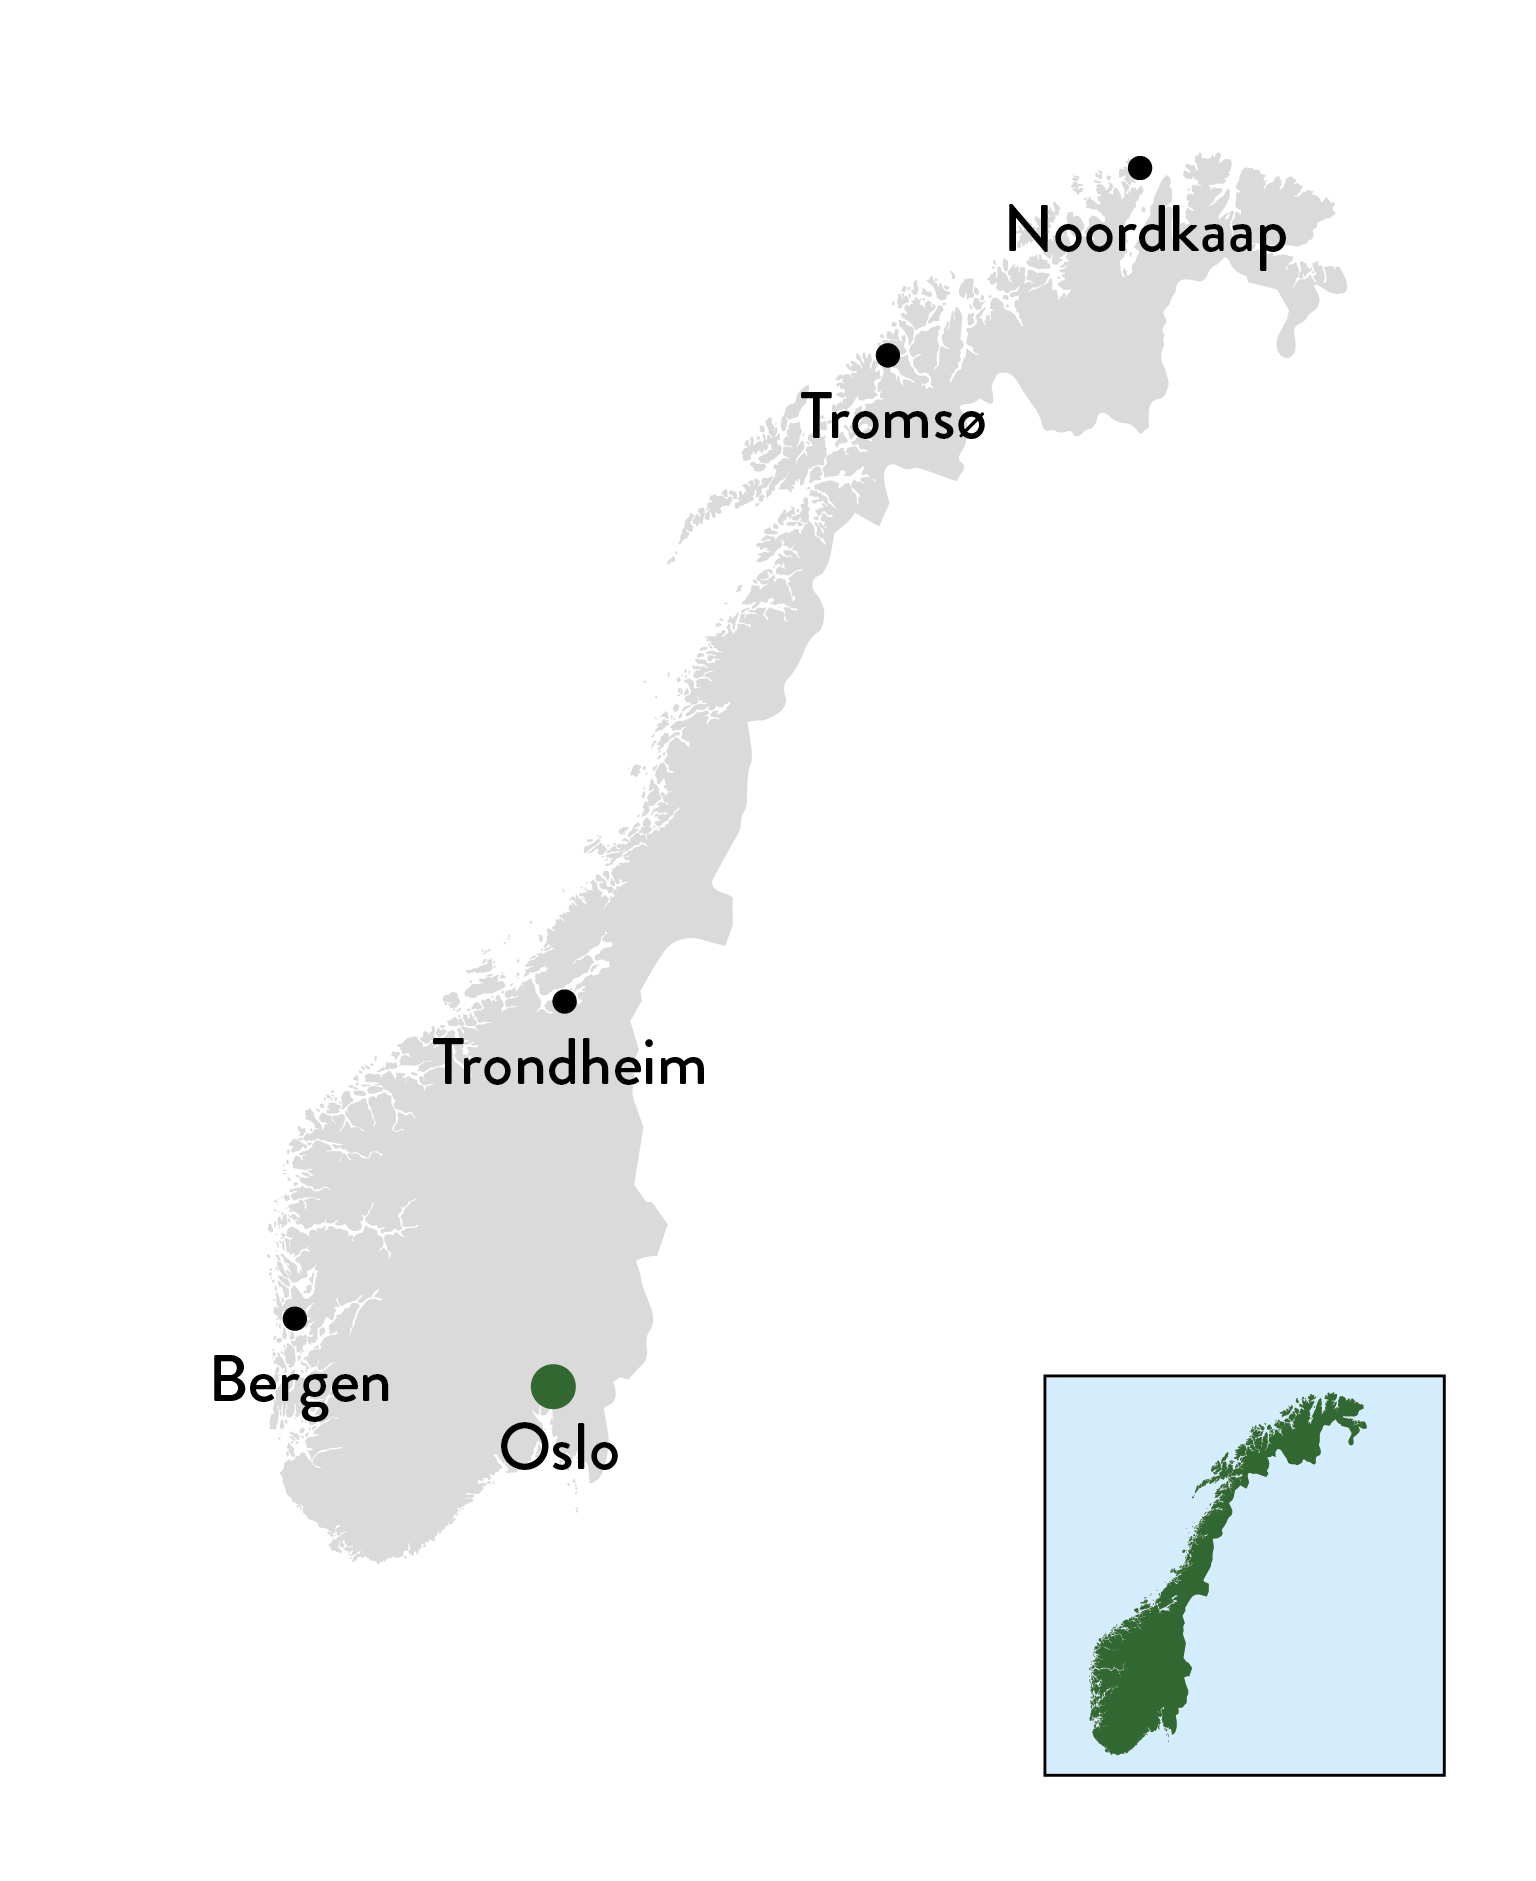 Noorwegen - basiskaart